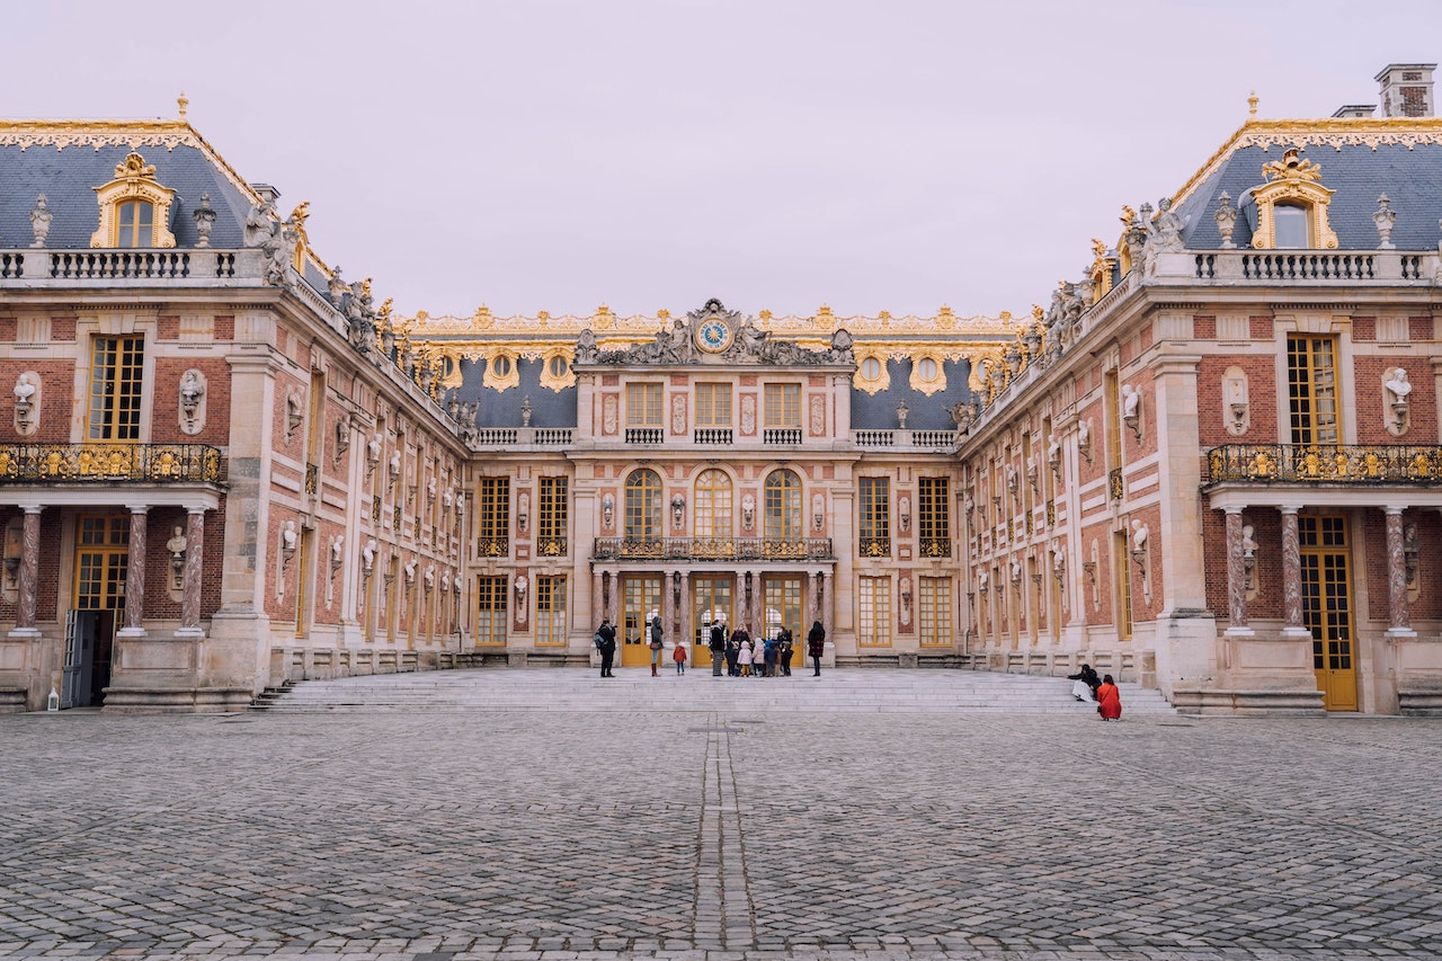 Versailles' loss.